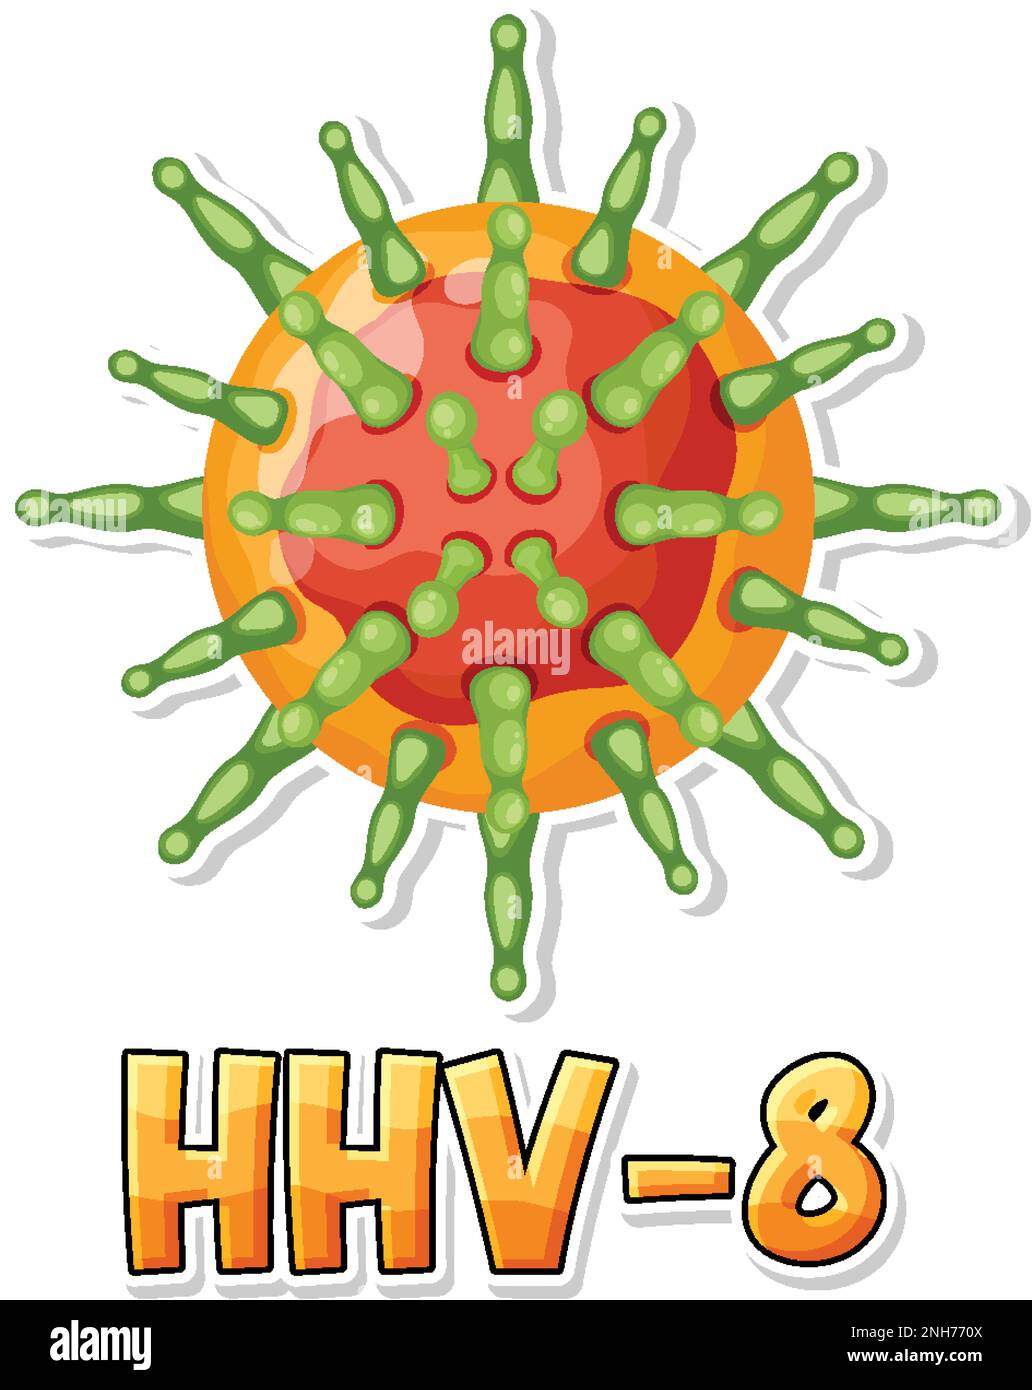 Human herpesvirus 8 (HHV 8) on white background illustration Stock Vector